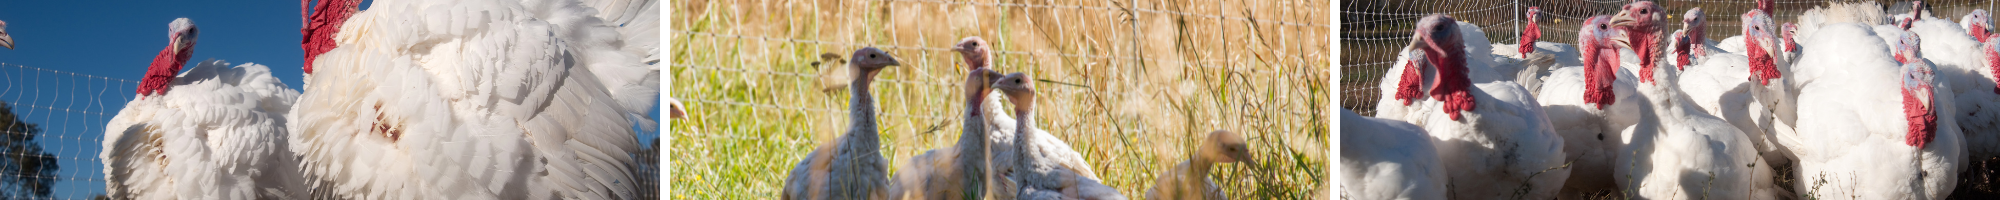 Pasture Raised Turkeys